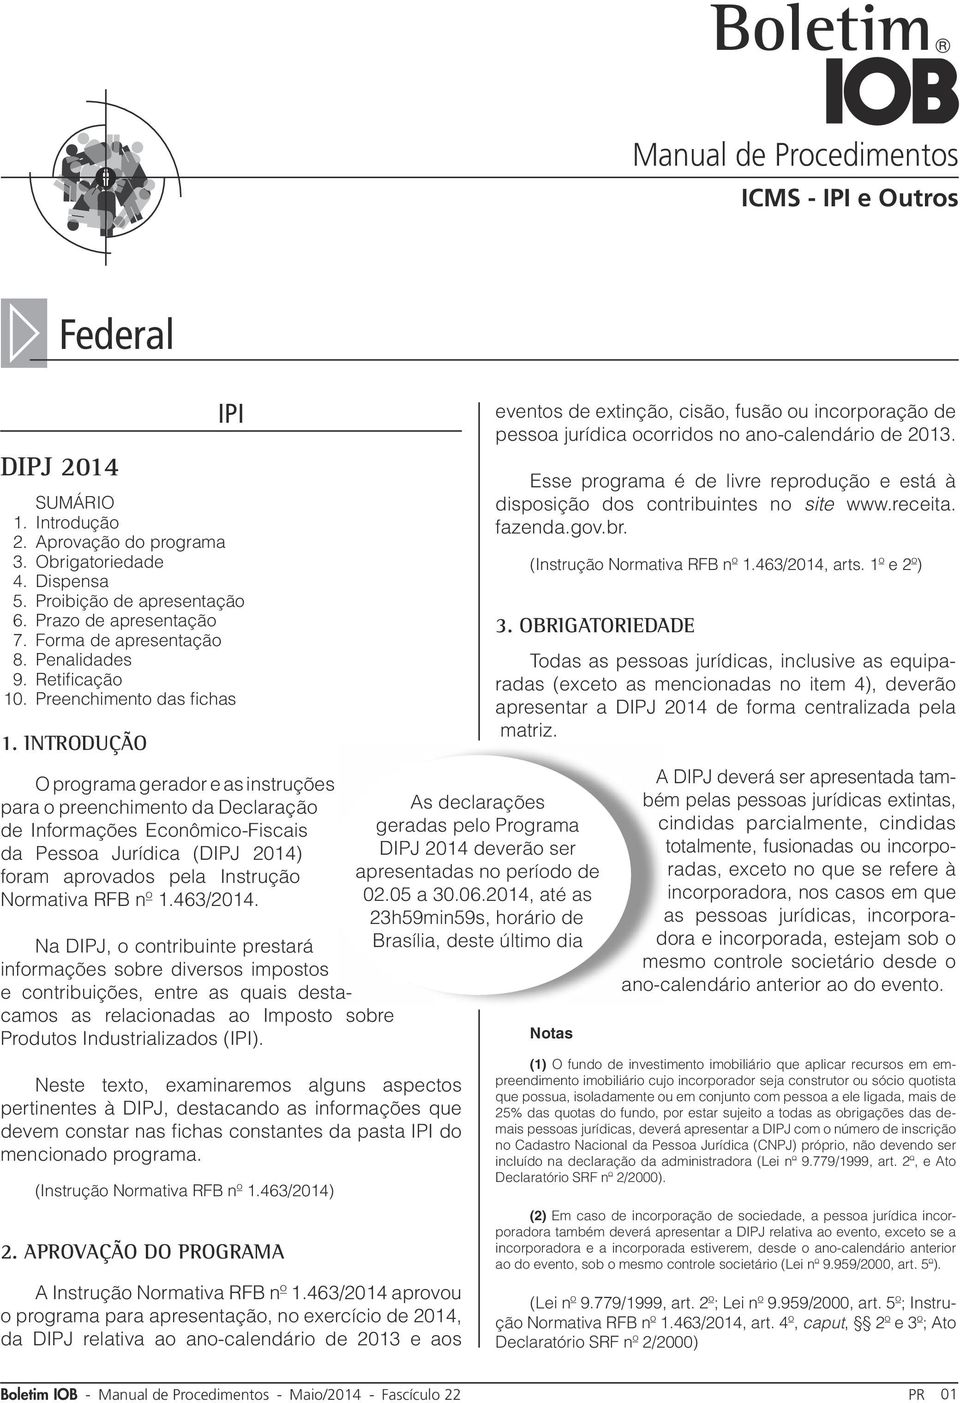 Introdução O programa gerador e as instruções para o preenchimento da Declaração de Informações Econômico-Fiscais da Pessoa Jurídica (DIPJ 2014) foram aprovados pela Instrução Normativa RFB nº 1.